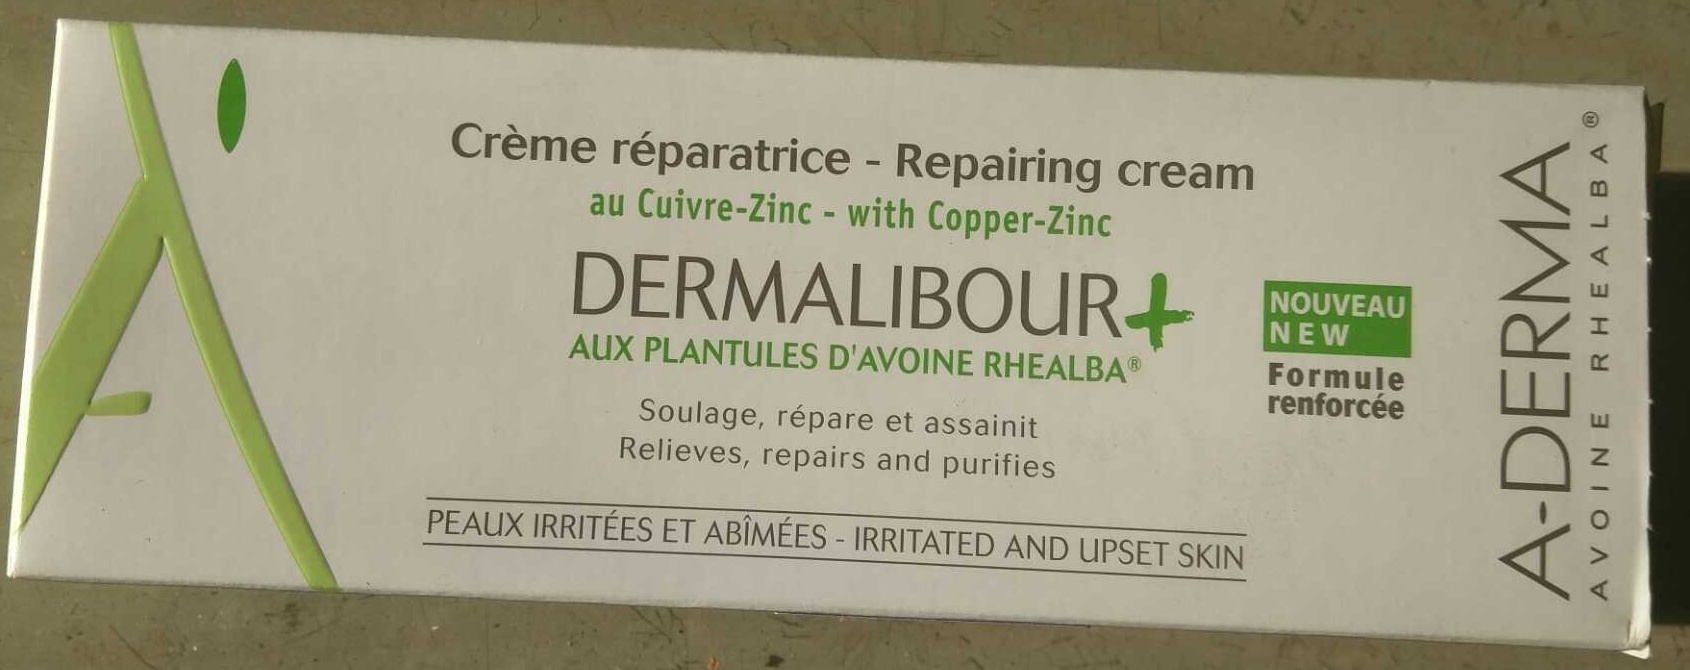 Crème réparatrice Dermalibour+ - 製品 - fr